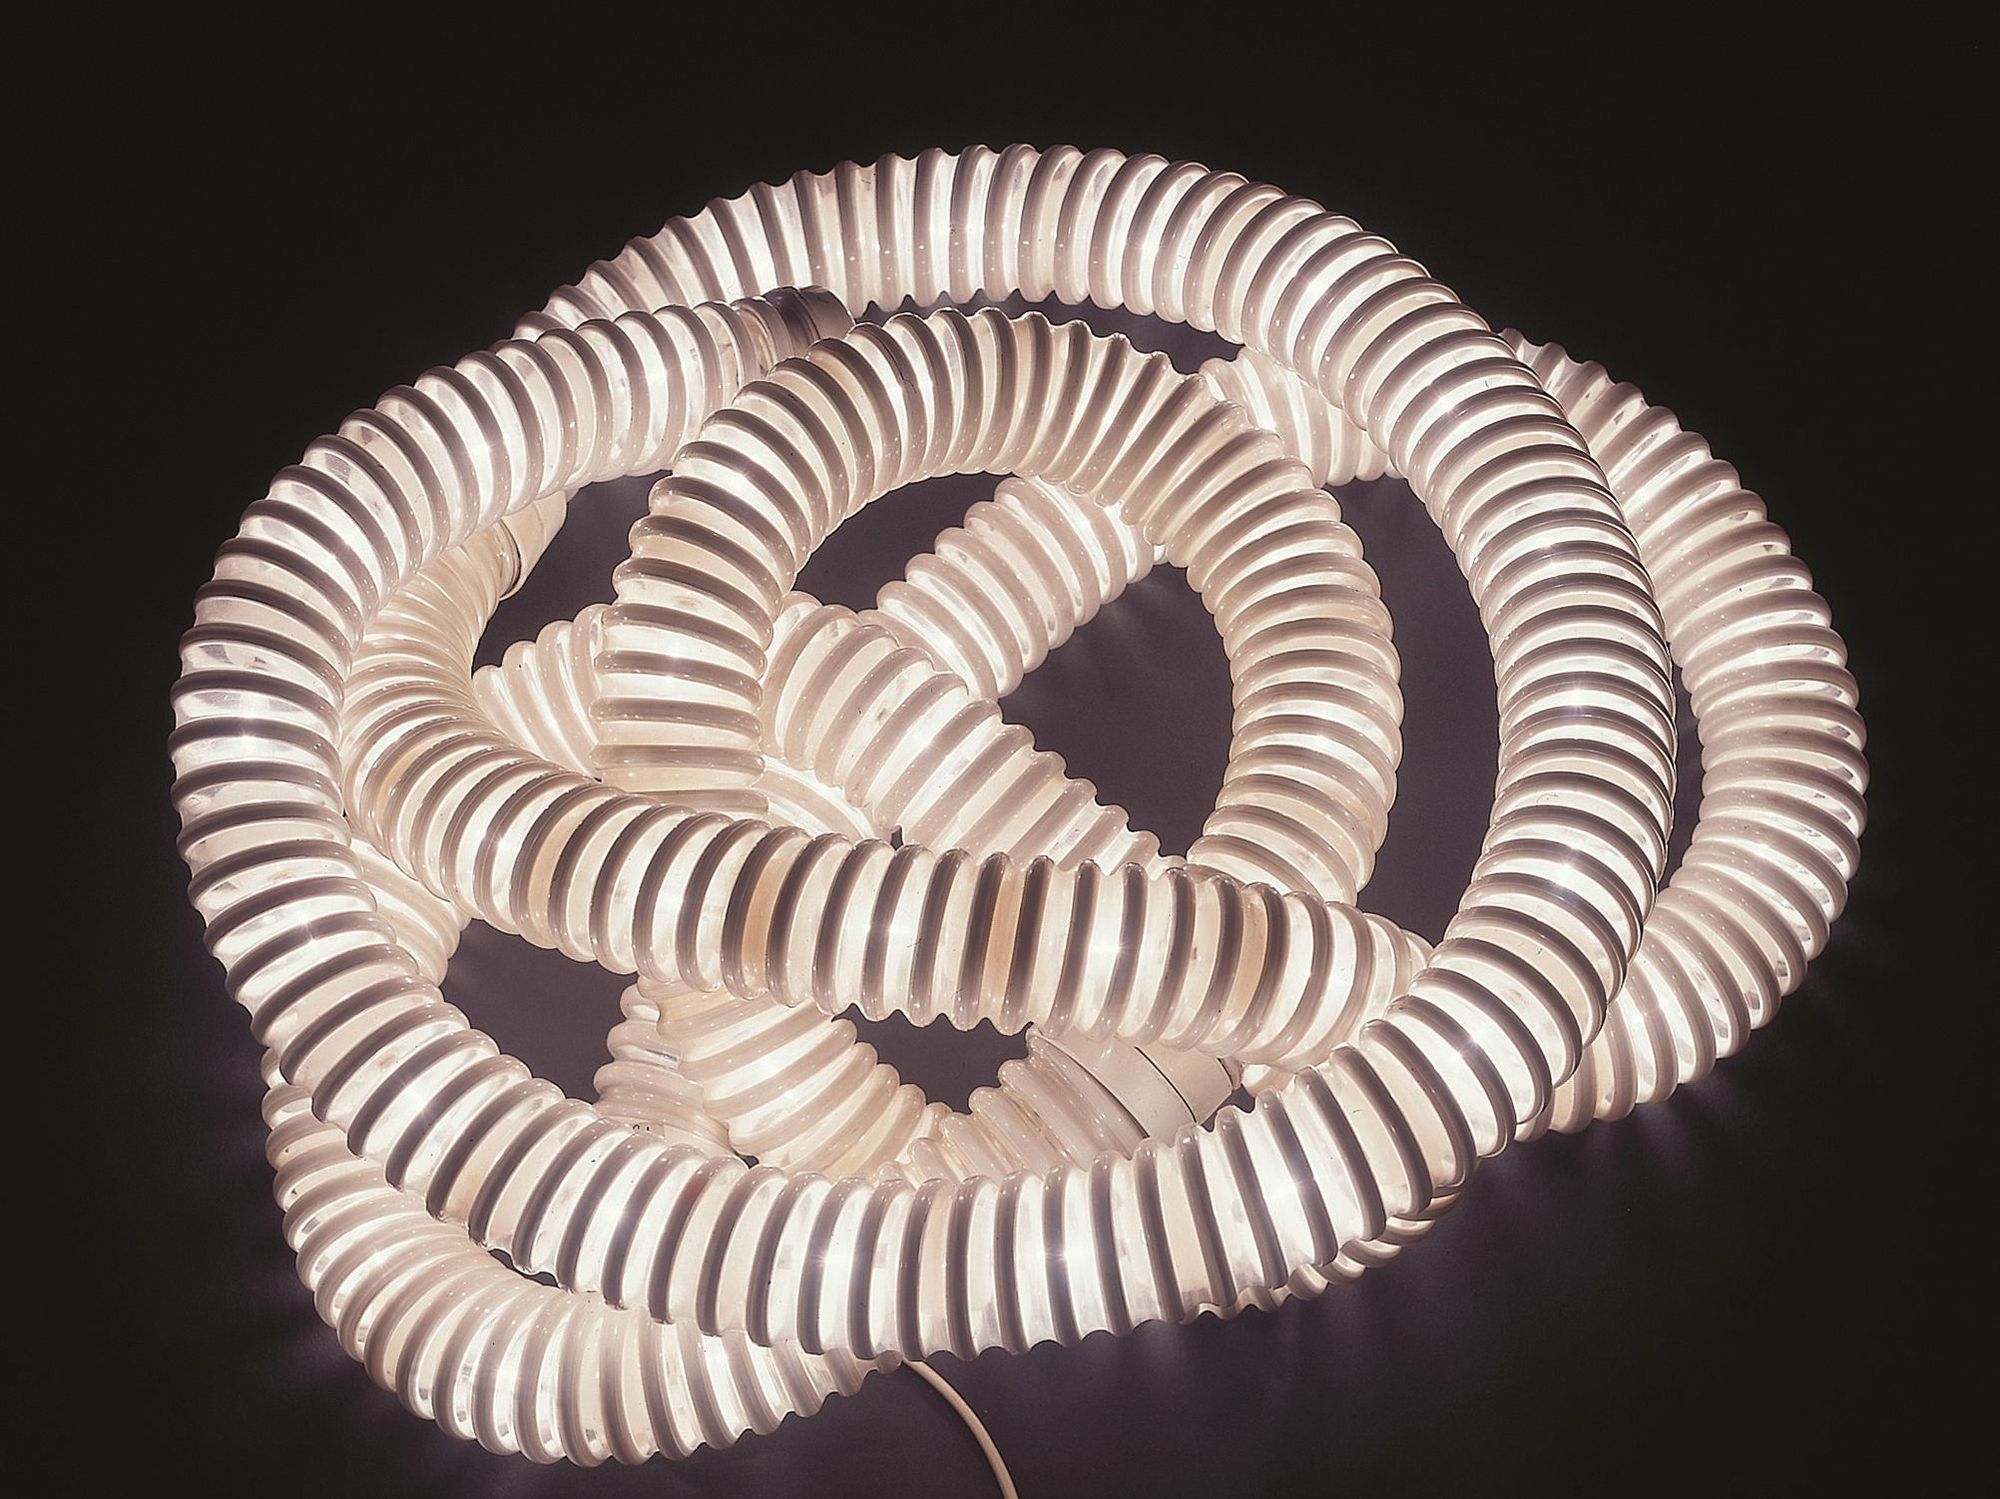 "Boalum Flexible Lamp" by Gianfranco Frattini and Livio Castiglioni, 1970